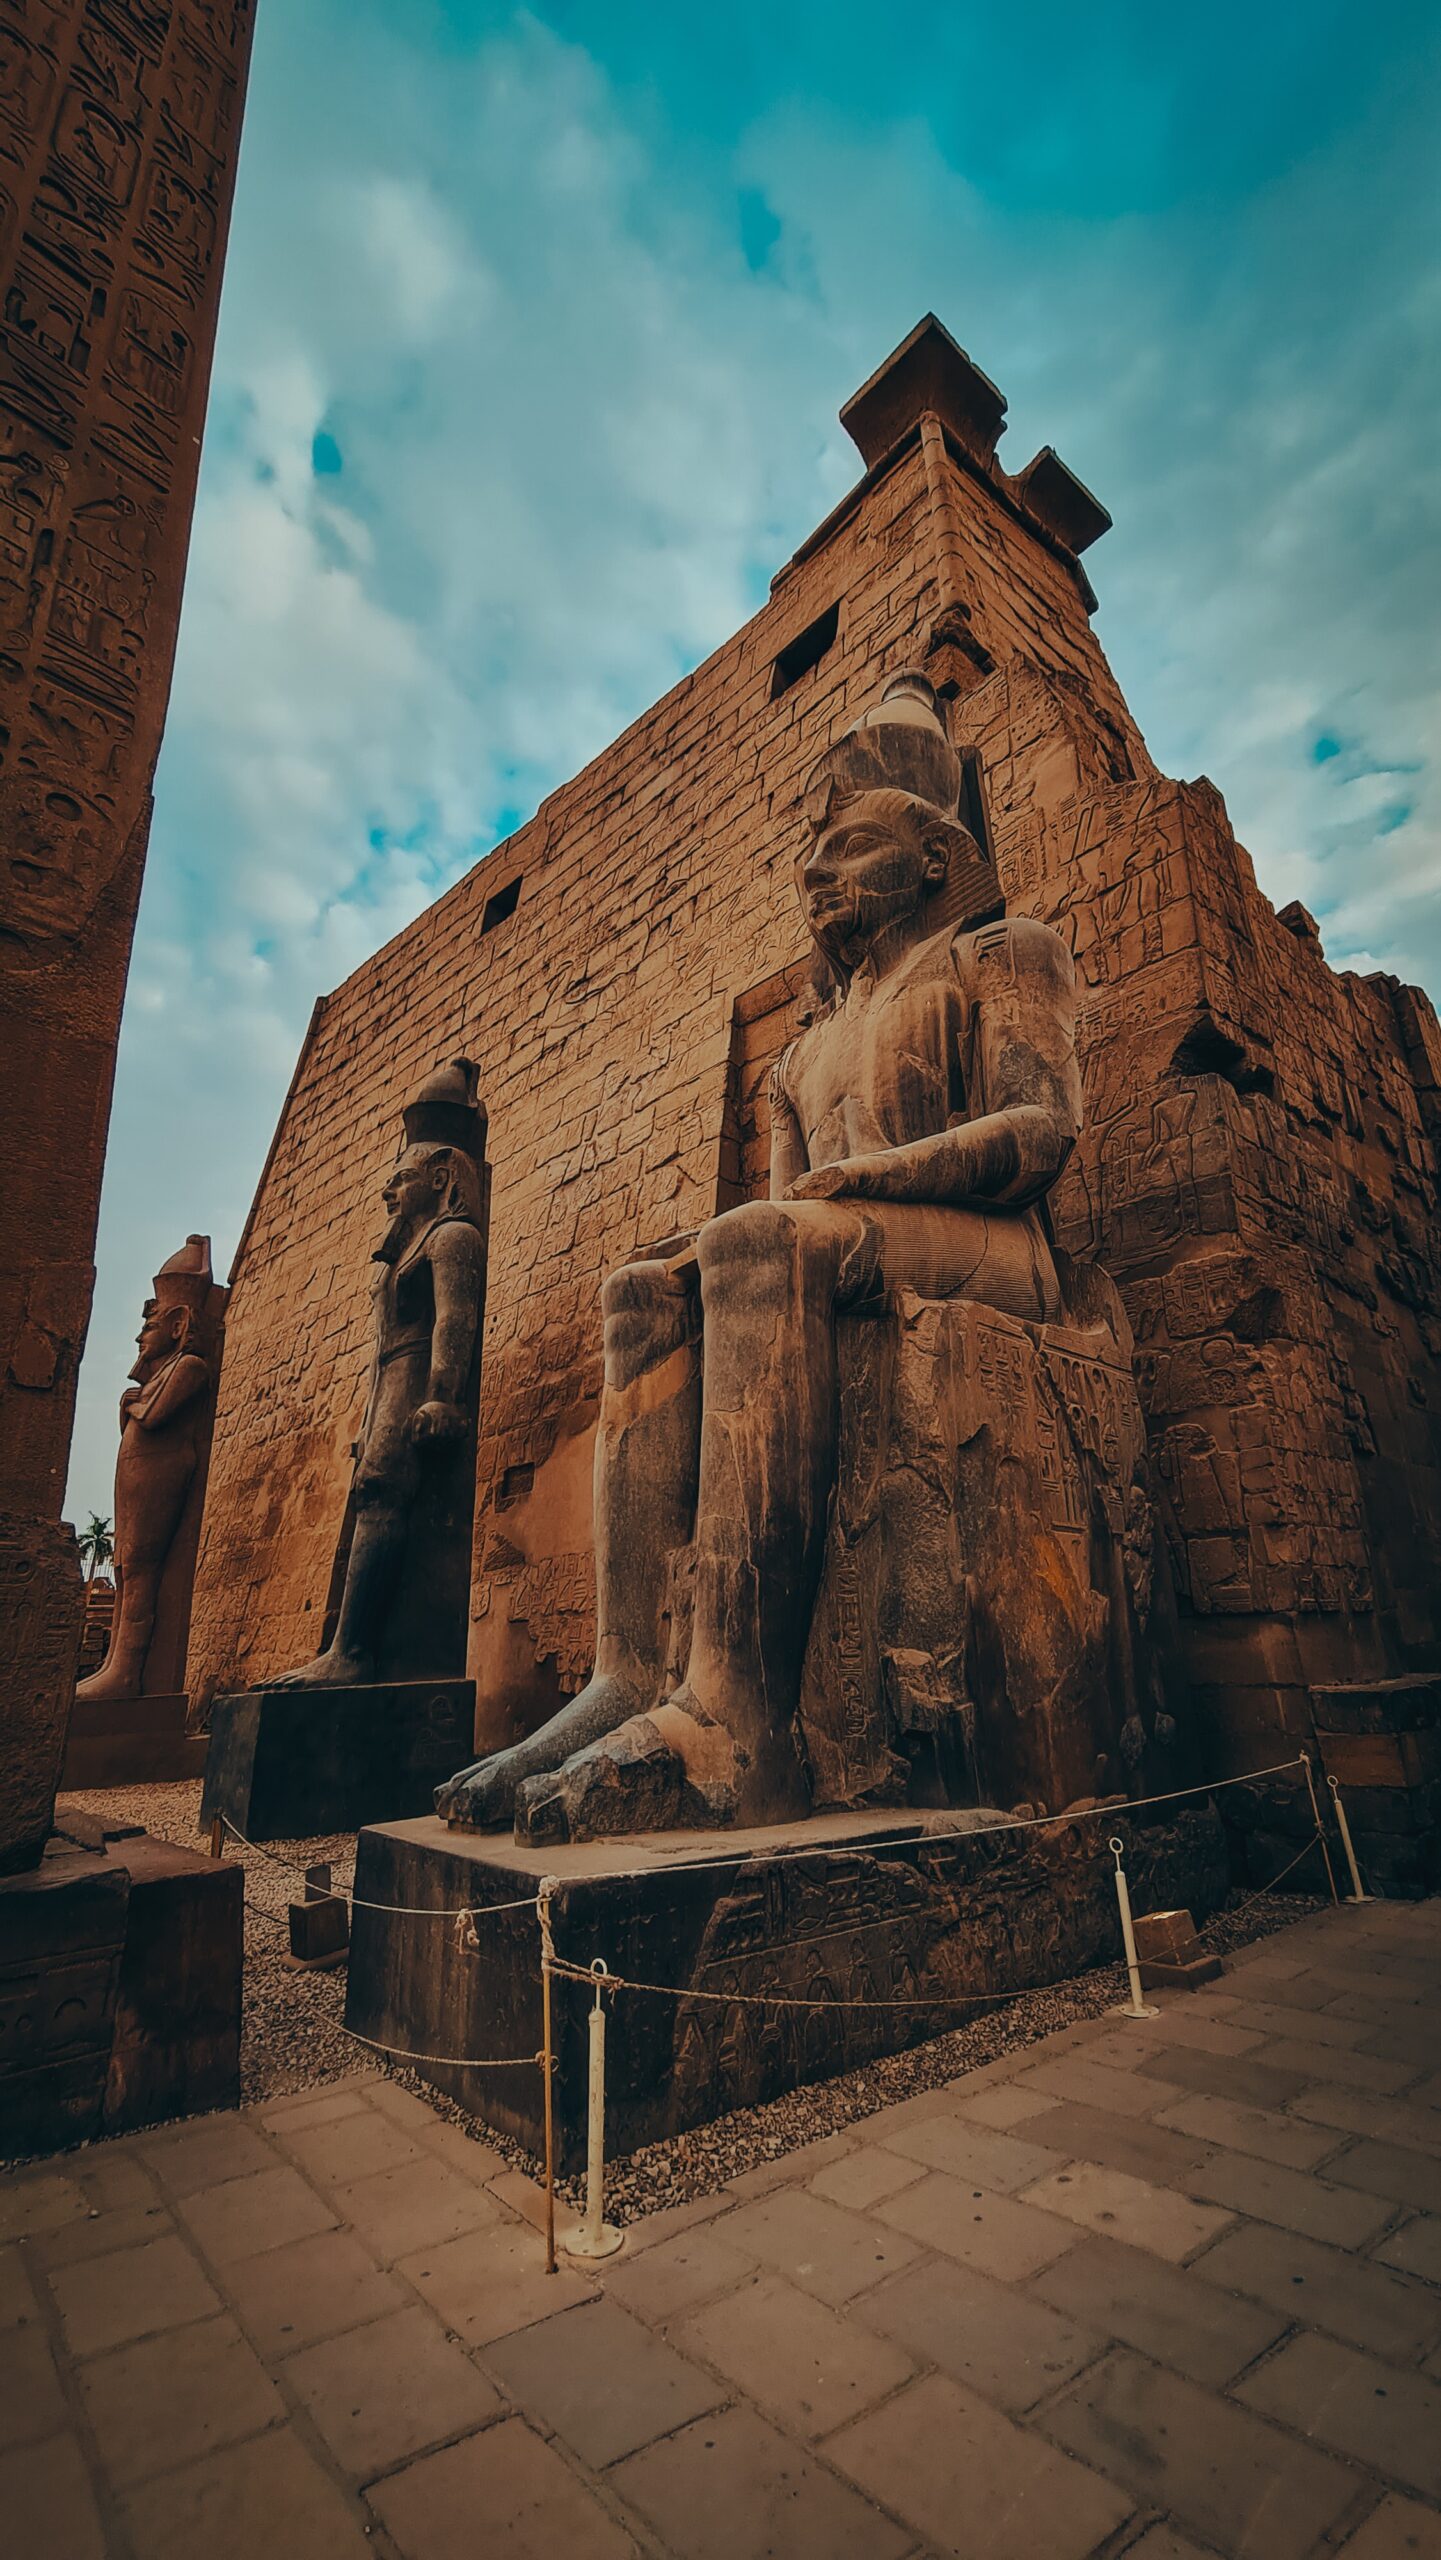 Luxor East Bank Temple, Karnak&Luxor